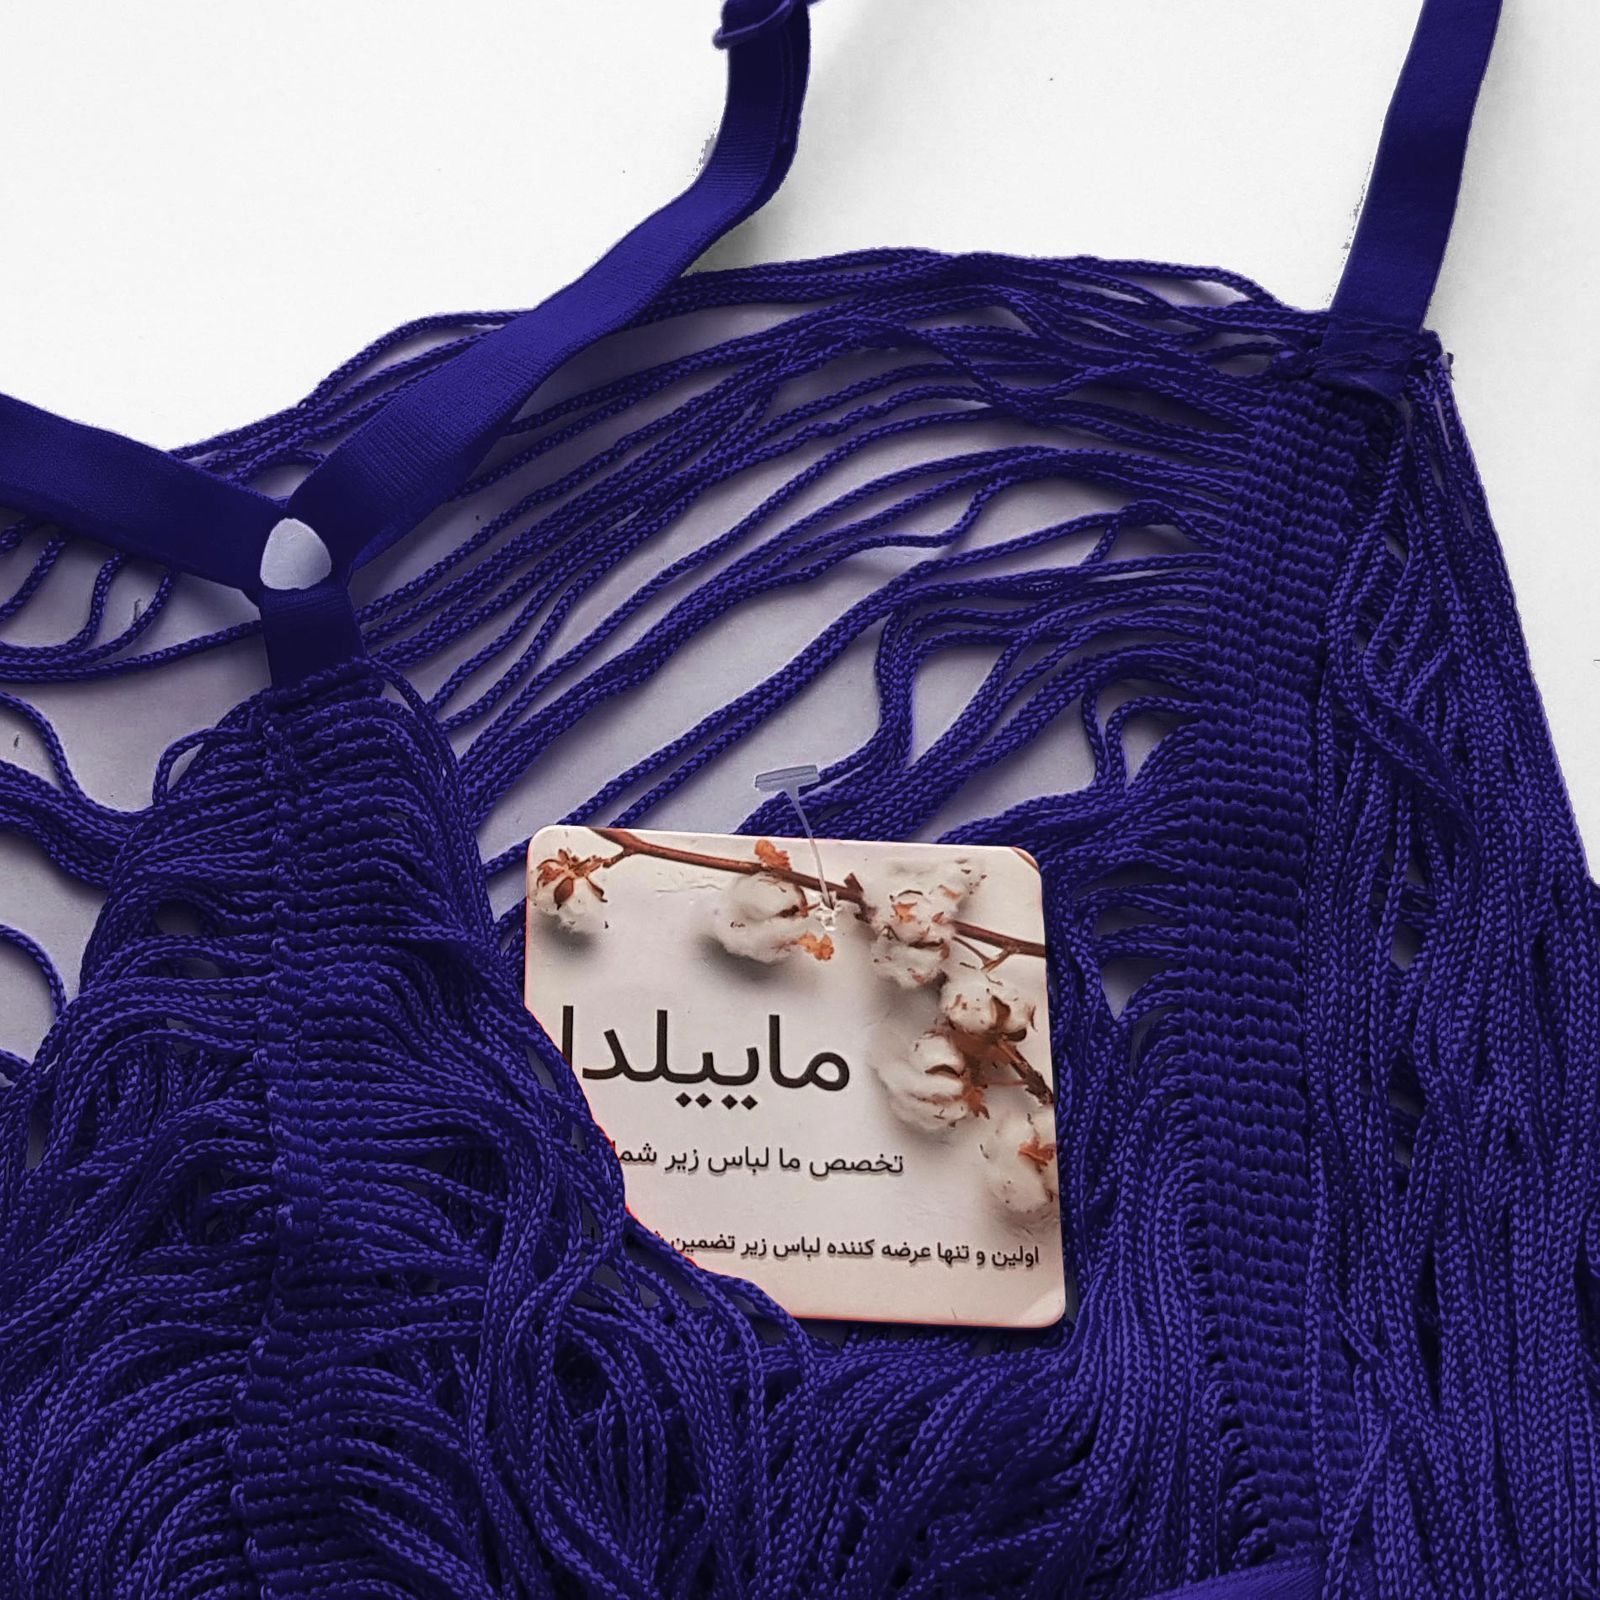 لباس خواب زنانه ماییلدا مدل ریش ریش کد 4438 رنگ سرمه ای -  - 5